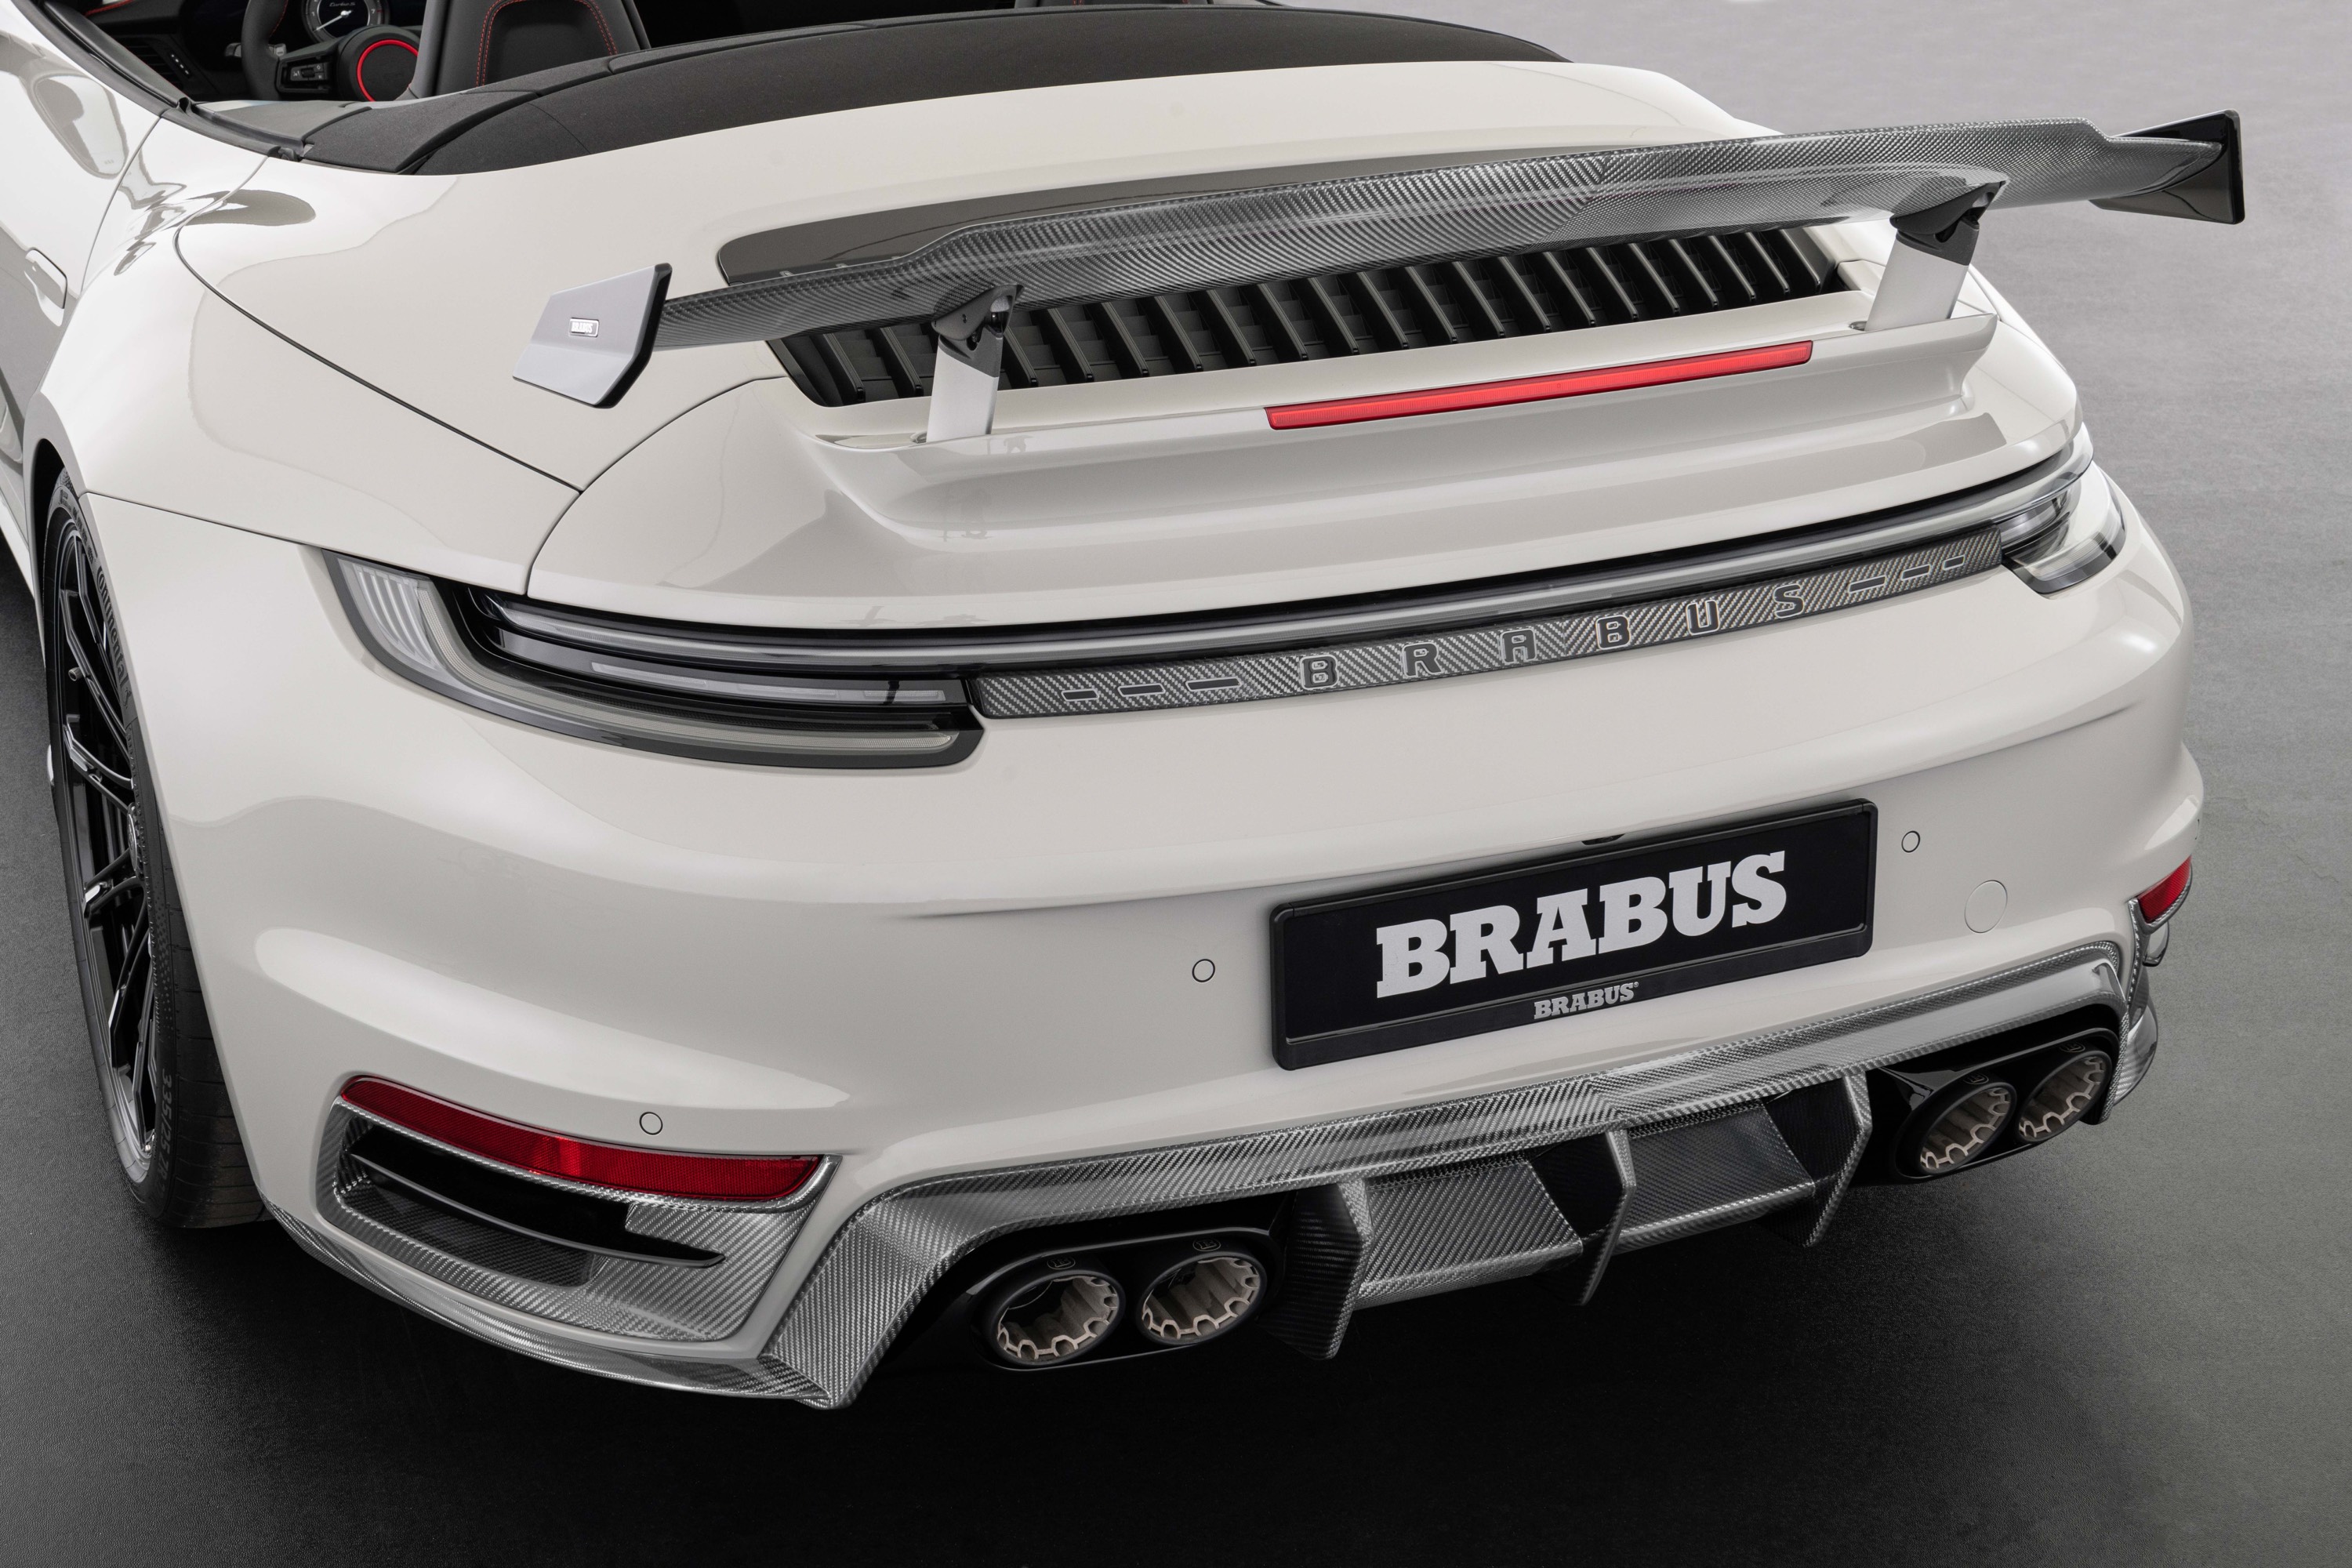 BRABUS 911 Turbo S Cabriolet